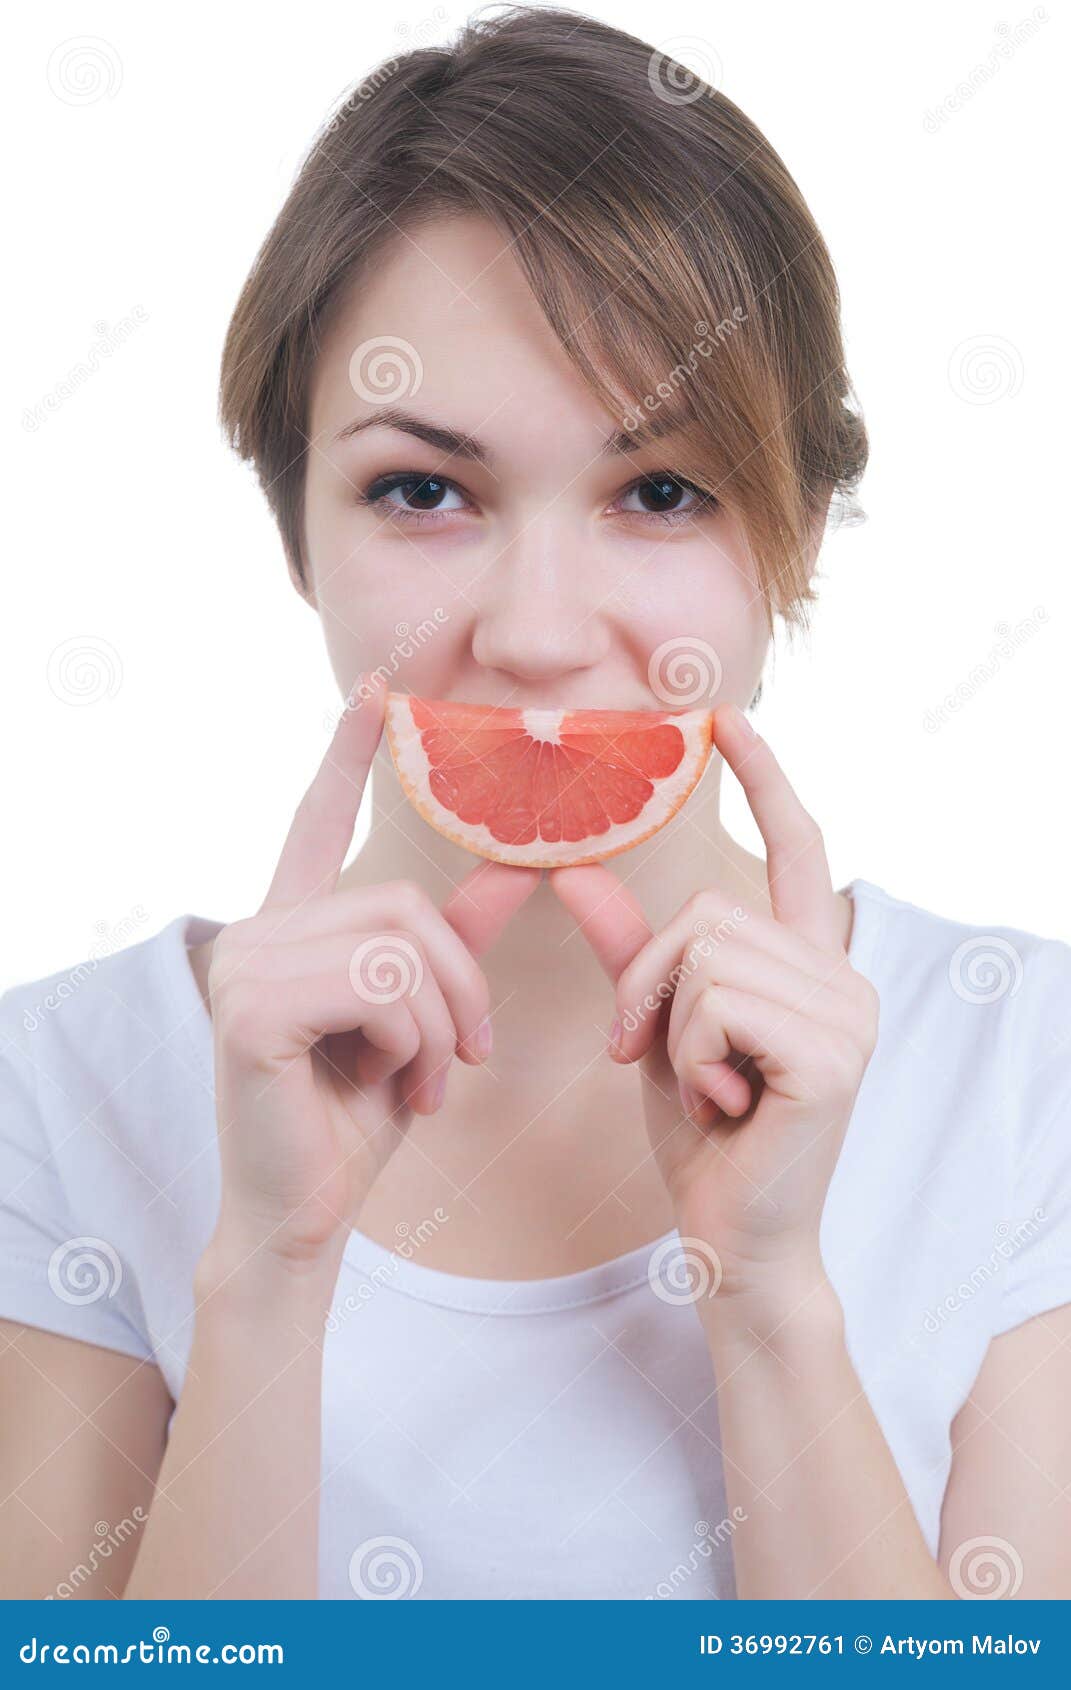 Держит еду во рту. Девушка с ломтиком. Девушка открыла рот для еды. Открытый рот с едой фото.